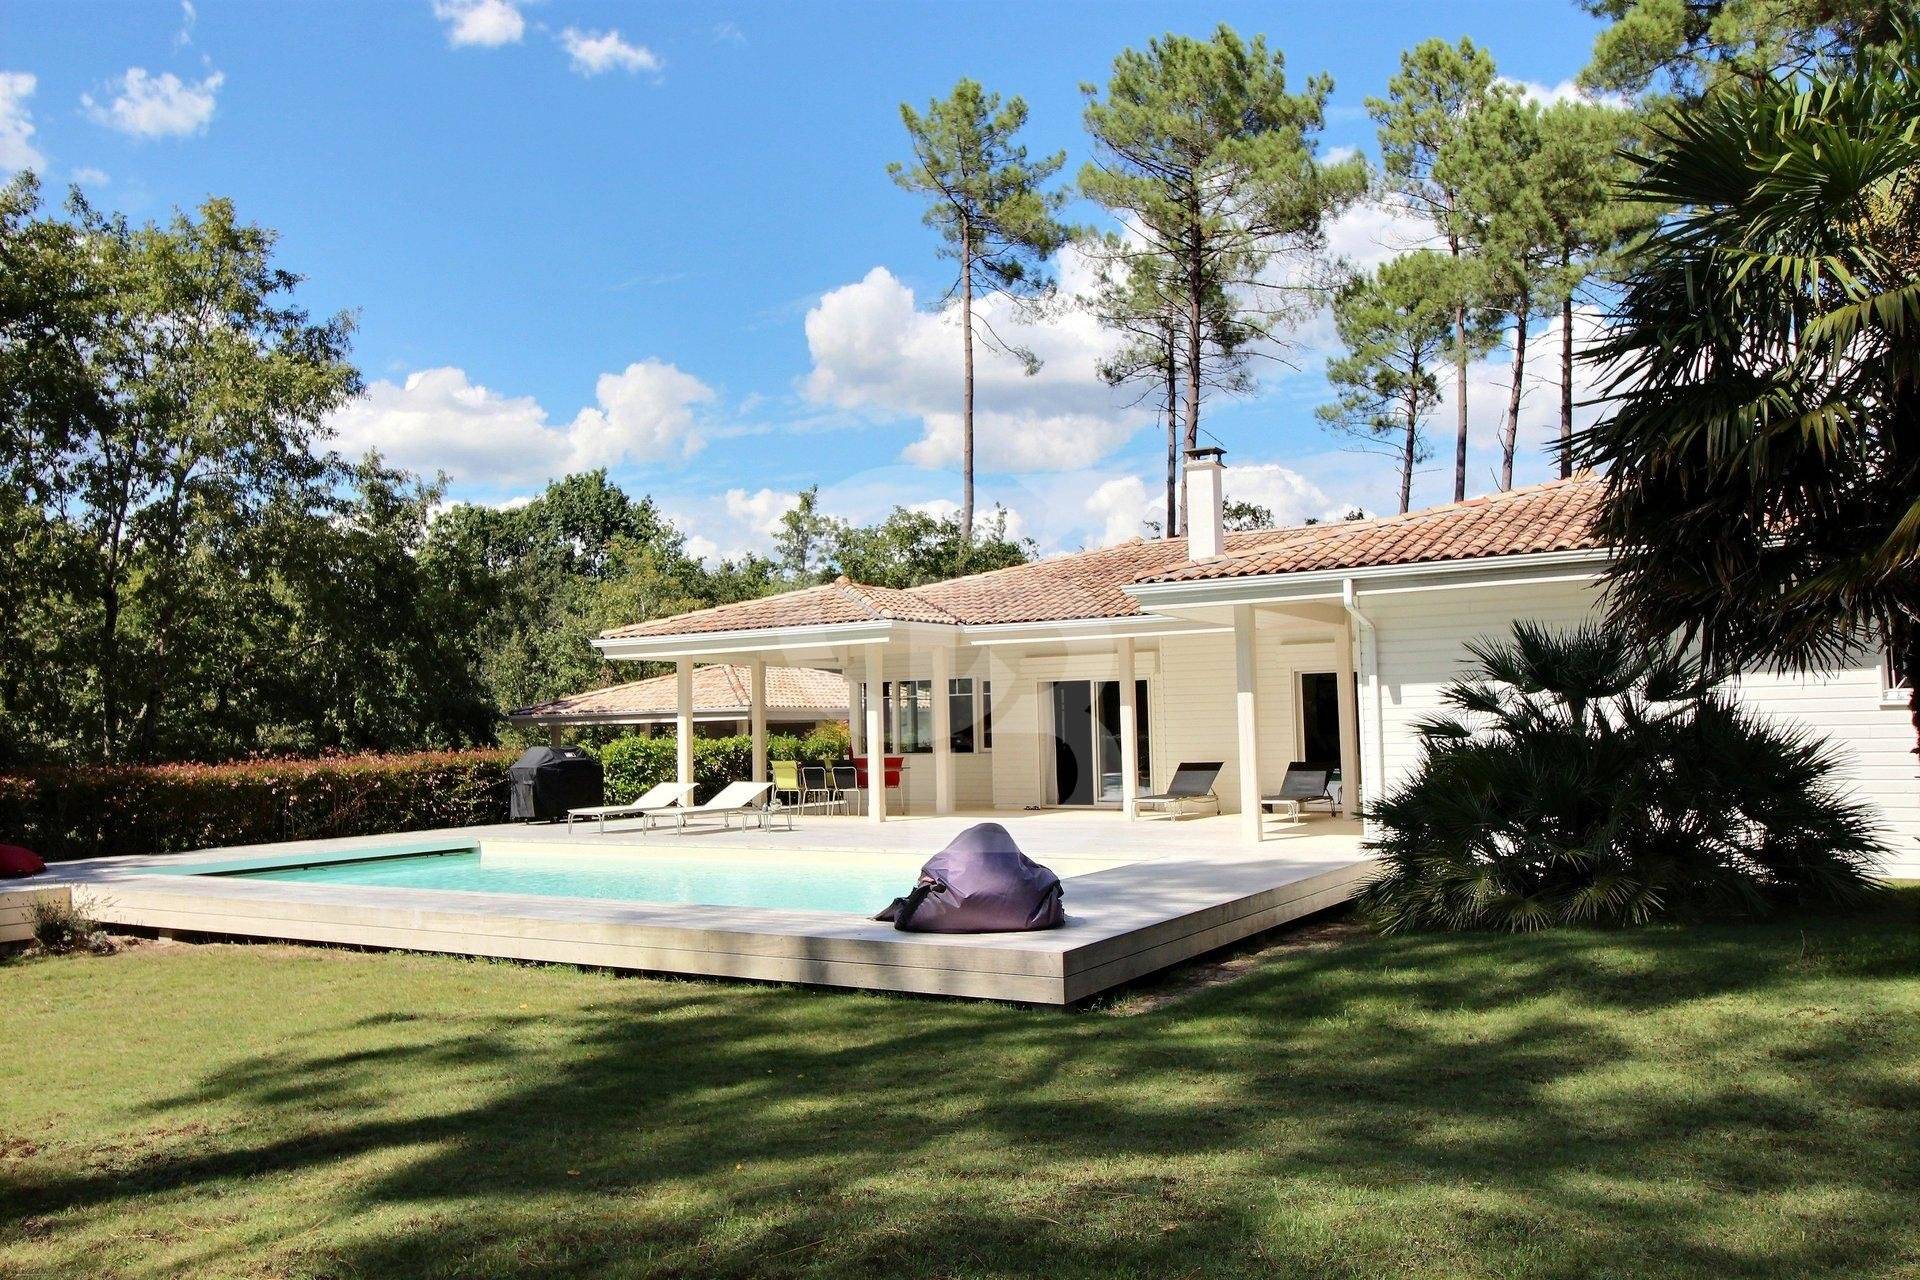 Vente villa avec piscine près de Bordeaux